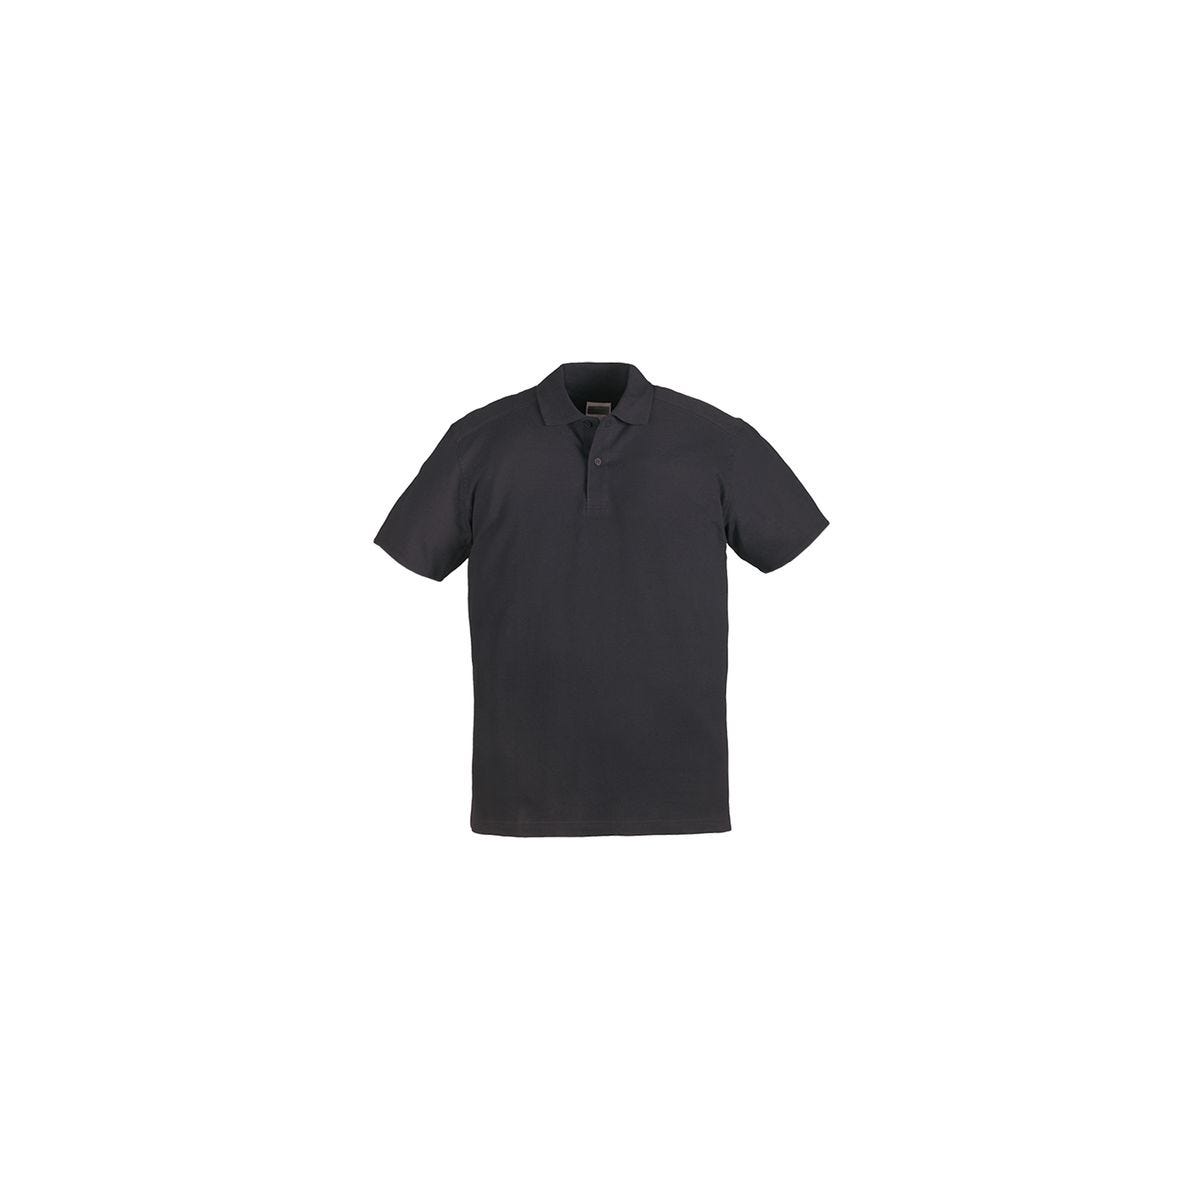 SAFARI Polo MC noir, 100% coton, 220g/m² - COVERGUARD - Taille XL 0